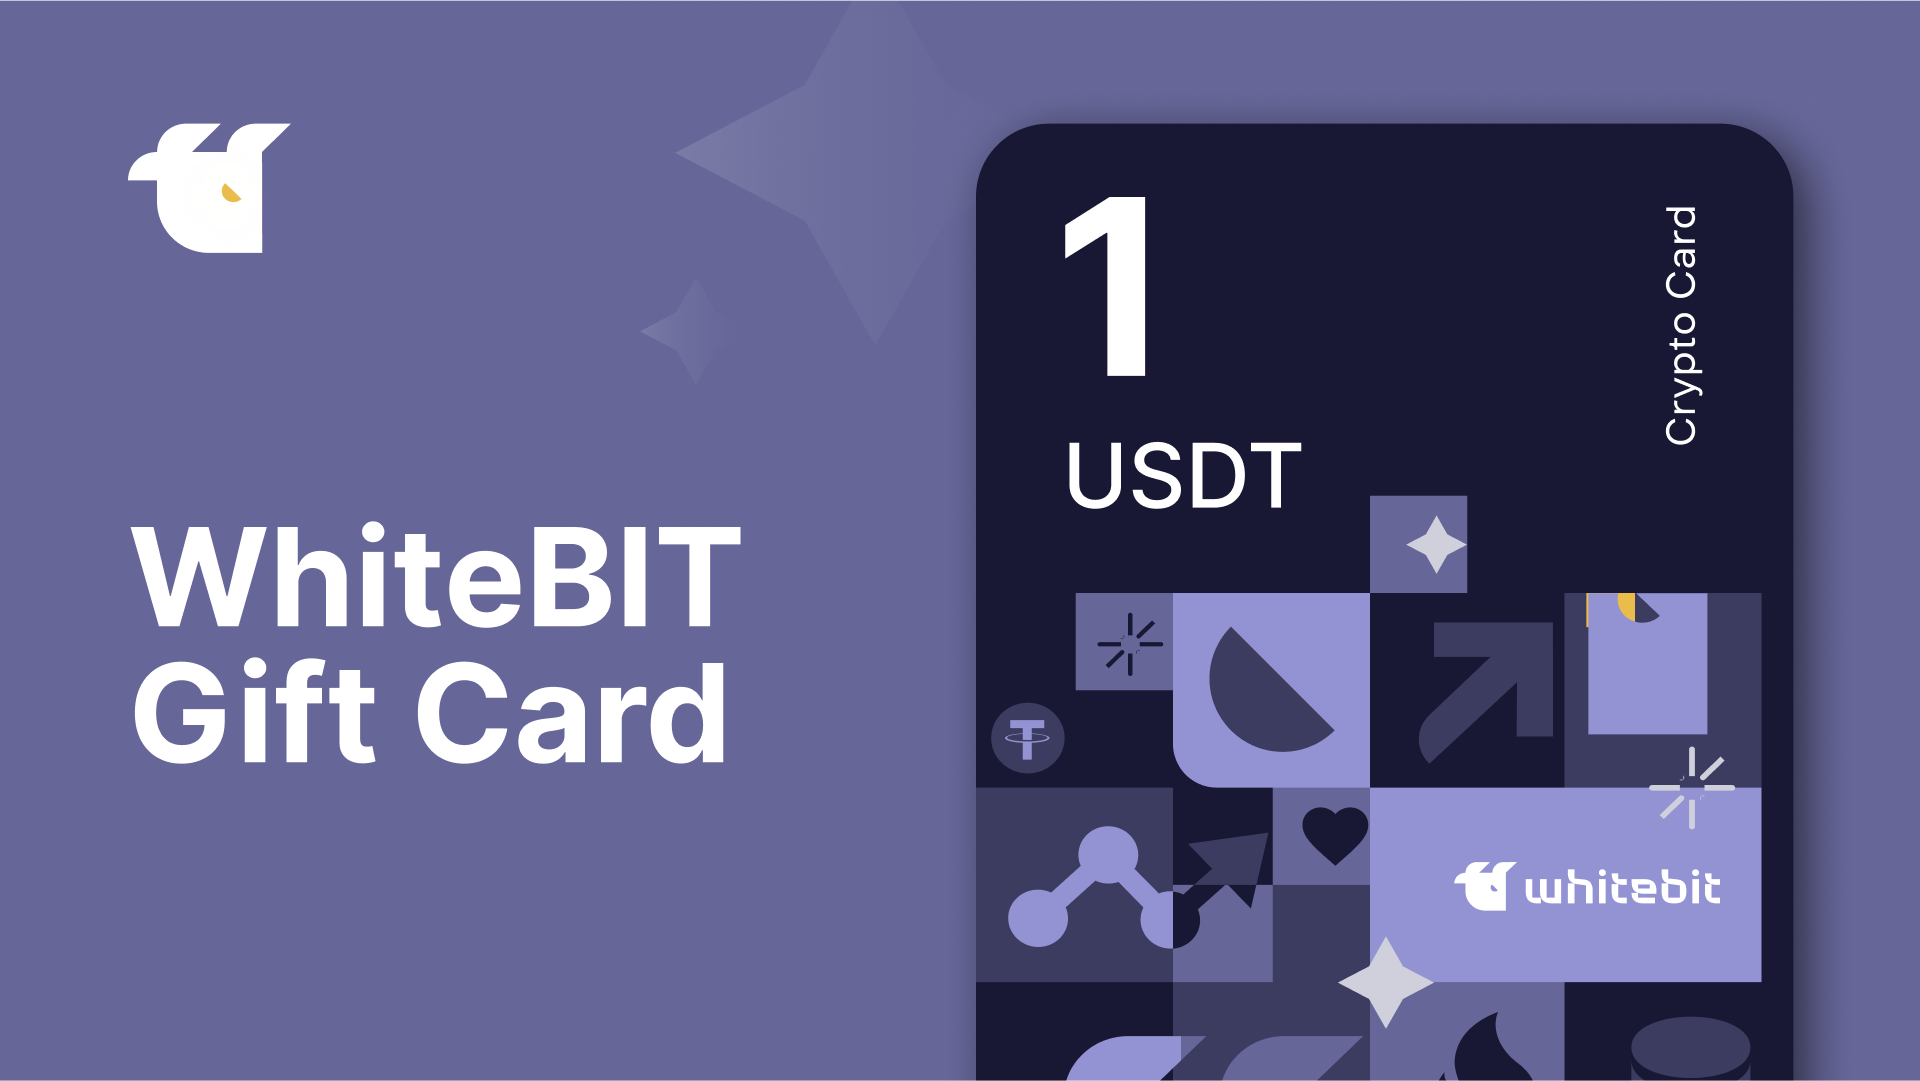 WhiteBIT 1 USDT Gift Card 1.33$